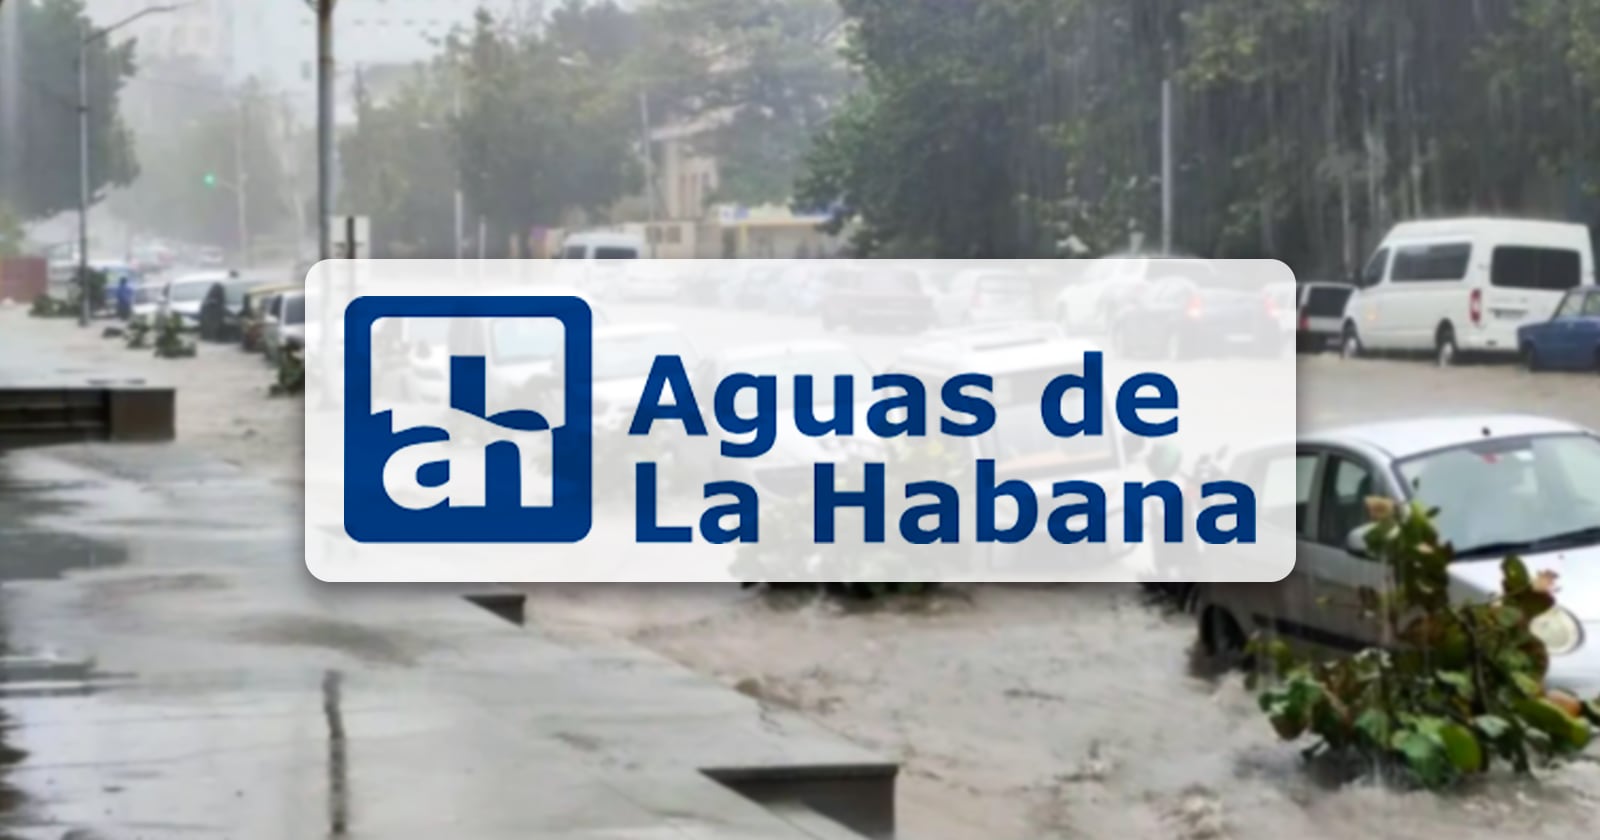 Afectaciones a la Calidad del Agua en La Habana: ¿Apta para el Consumo?